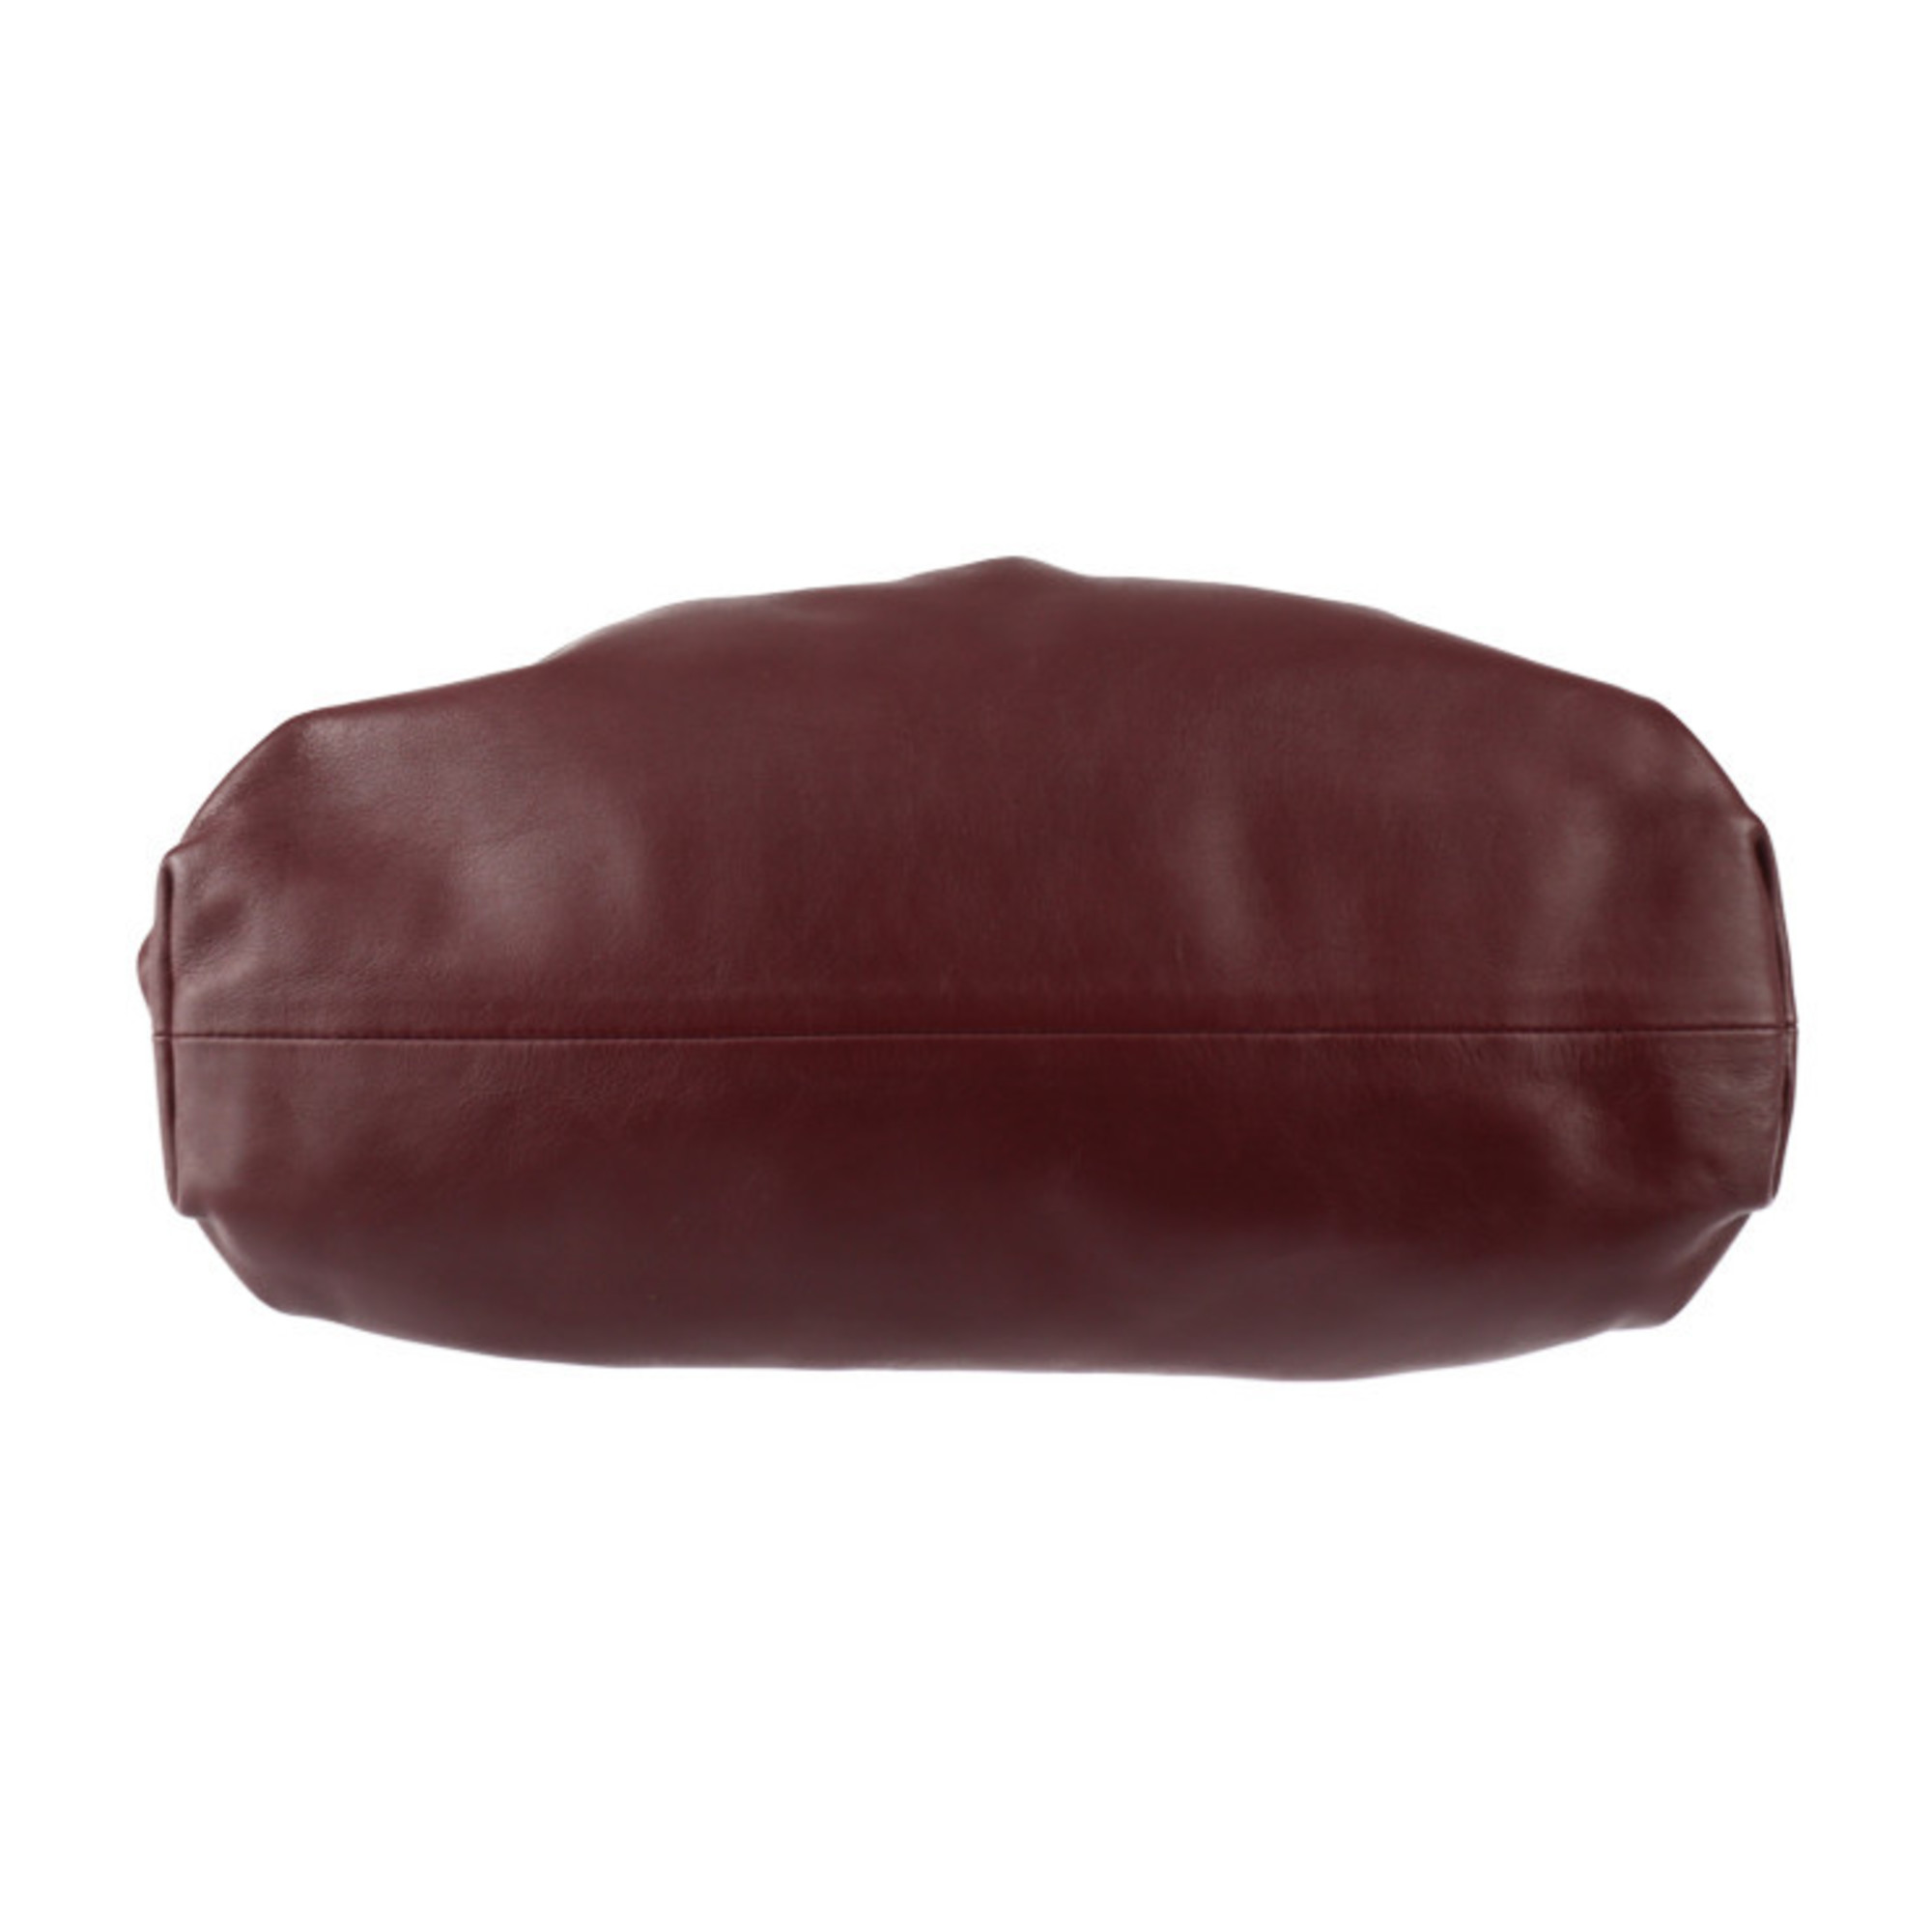 BOTTEGA VENETA The Pouch Clutch Bag 576227 Calf Leather Bordeaux Second Clasp